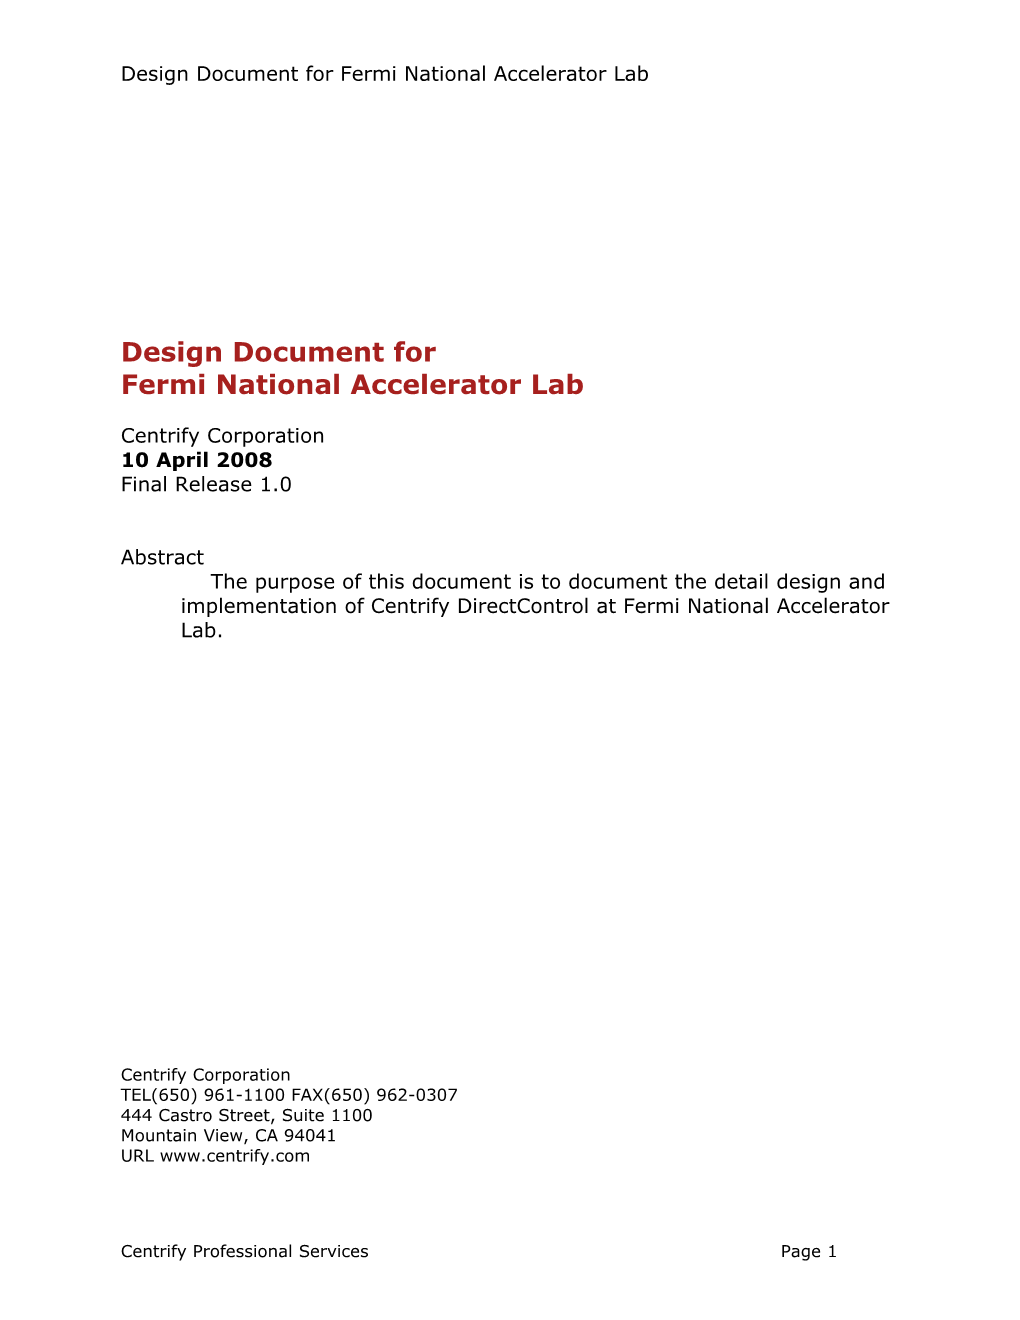 Design Document For Sanofi-Aventis US